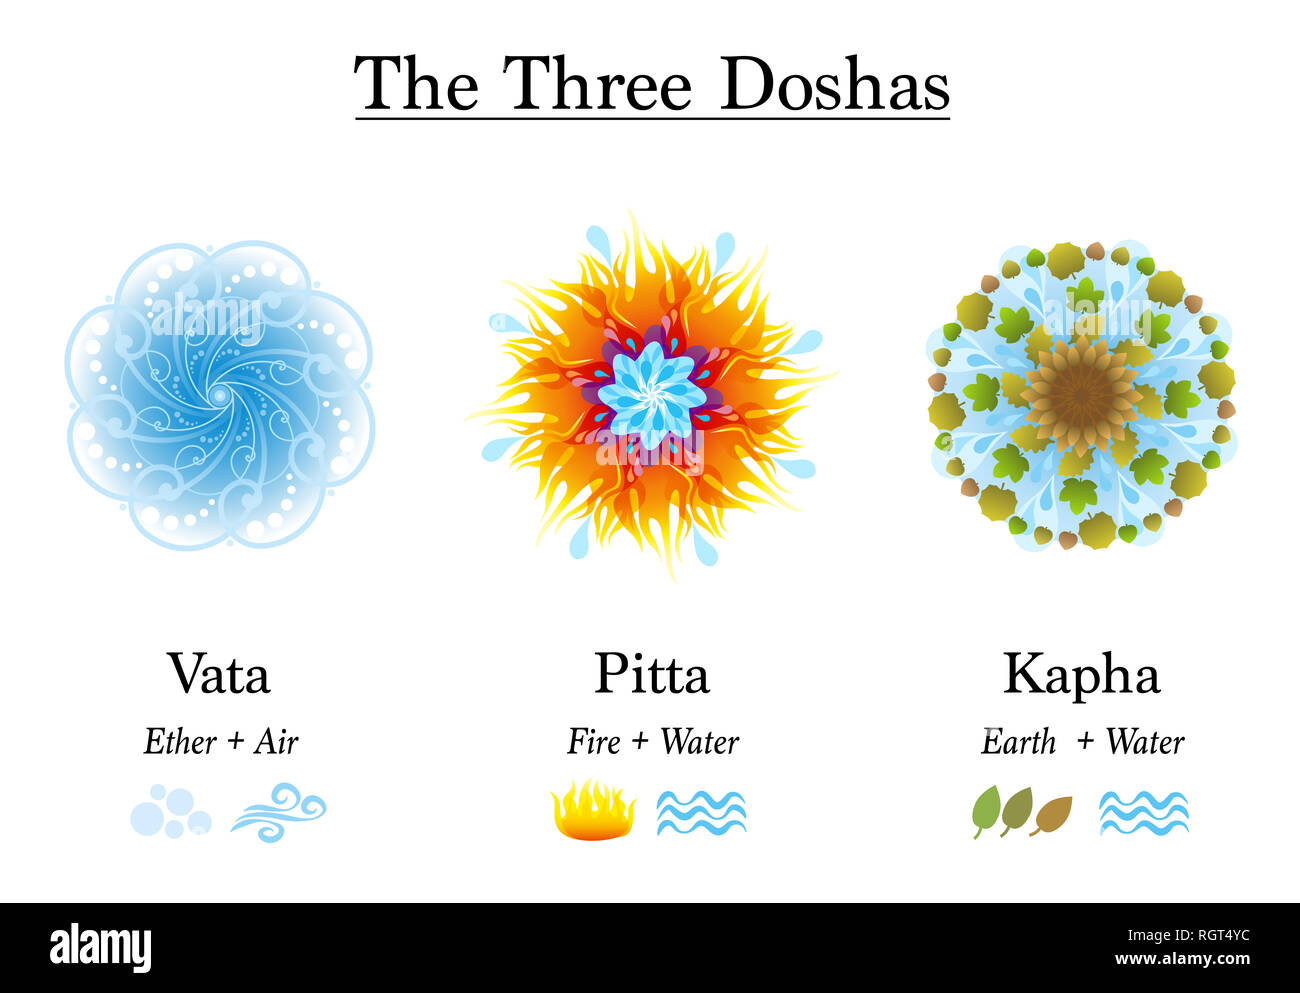 Trois doshas, Vata, Pitta, Kapha - Symboles d'Ayurvedic de constitution corporelle types, conçu avec les éléments éther, air, feu, eau et terre. Banque D'Images